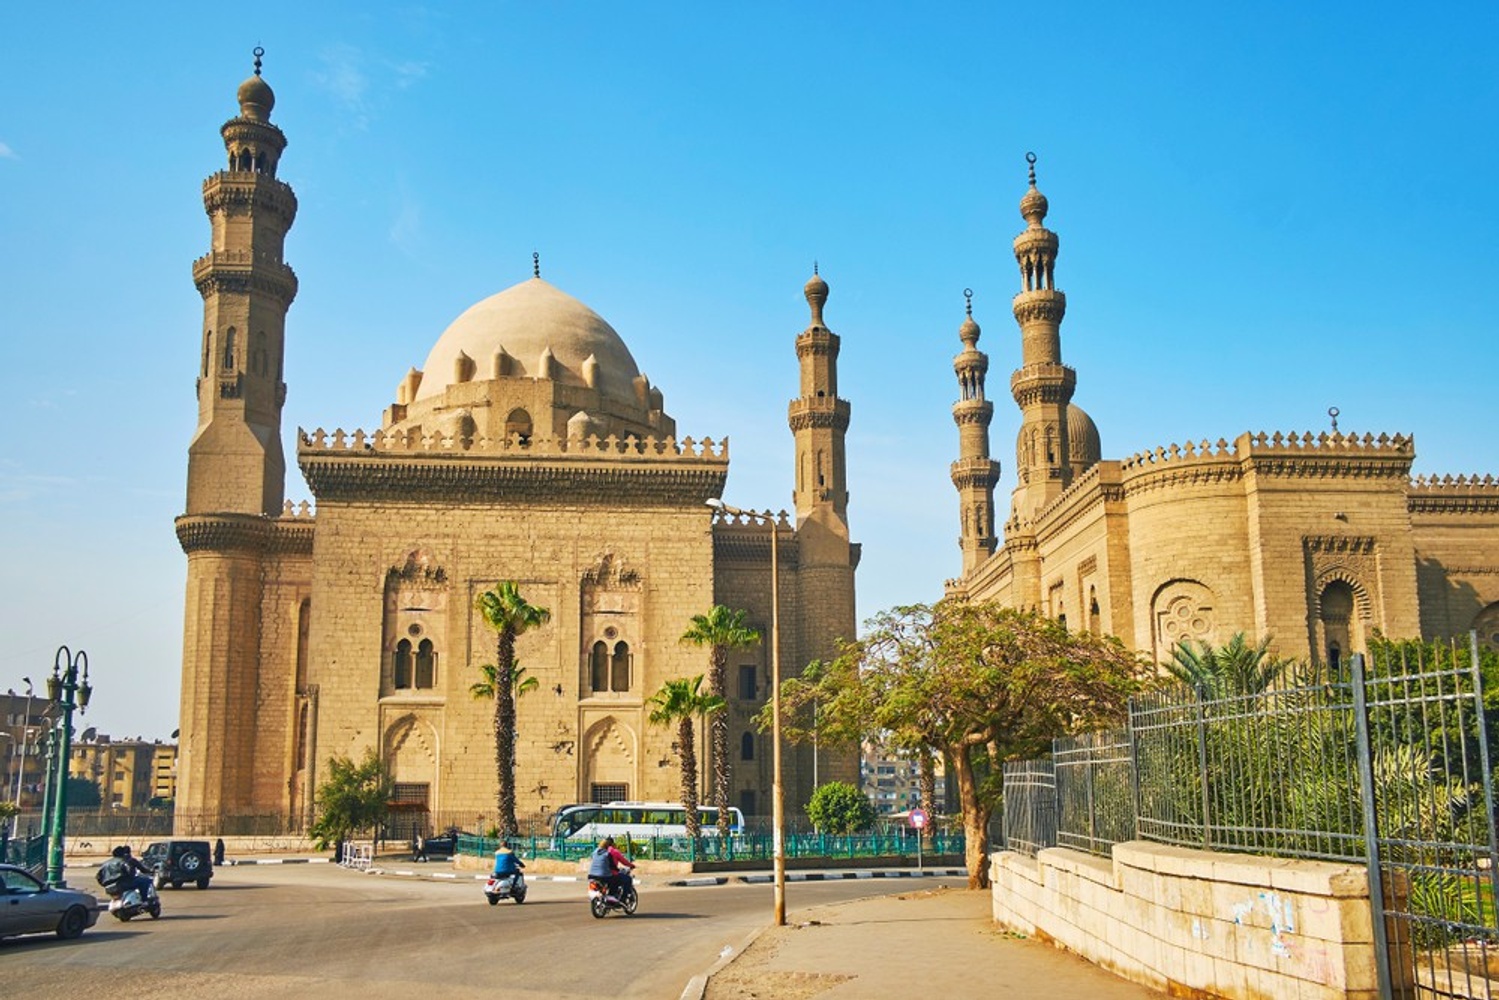 5 nopti in Egipt – 251 euro (include zbor si cazare)